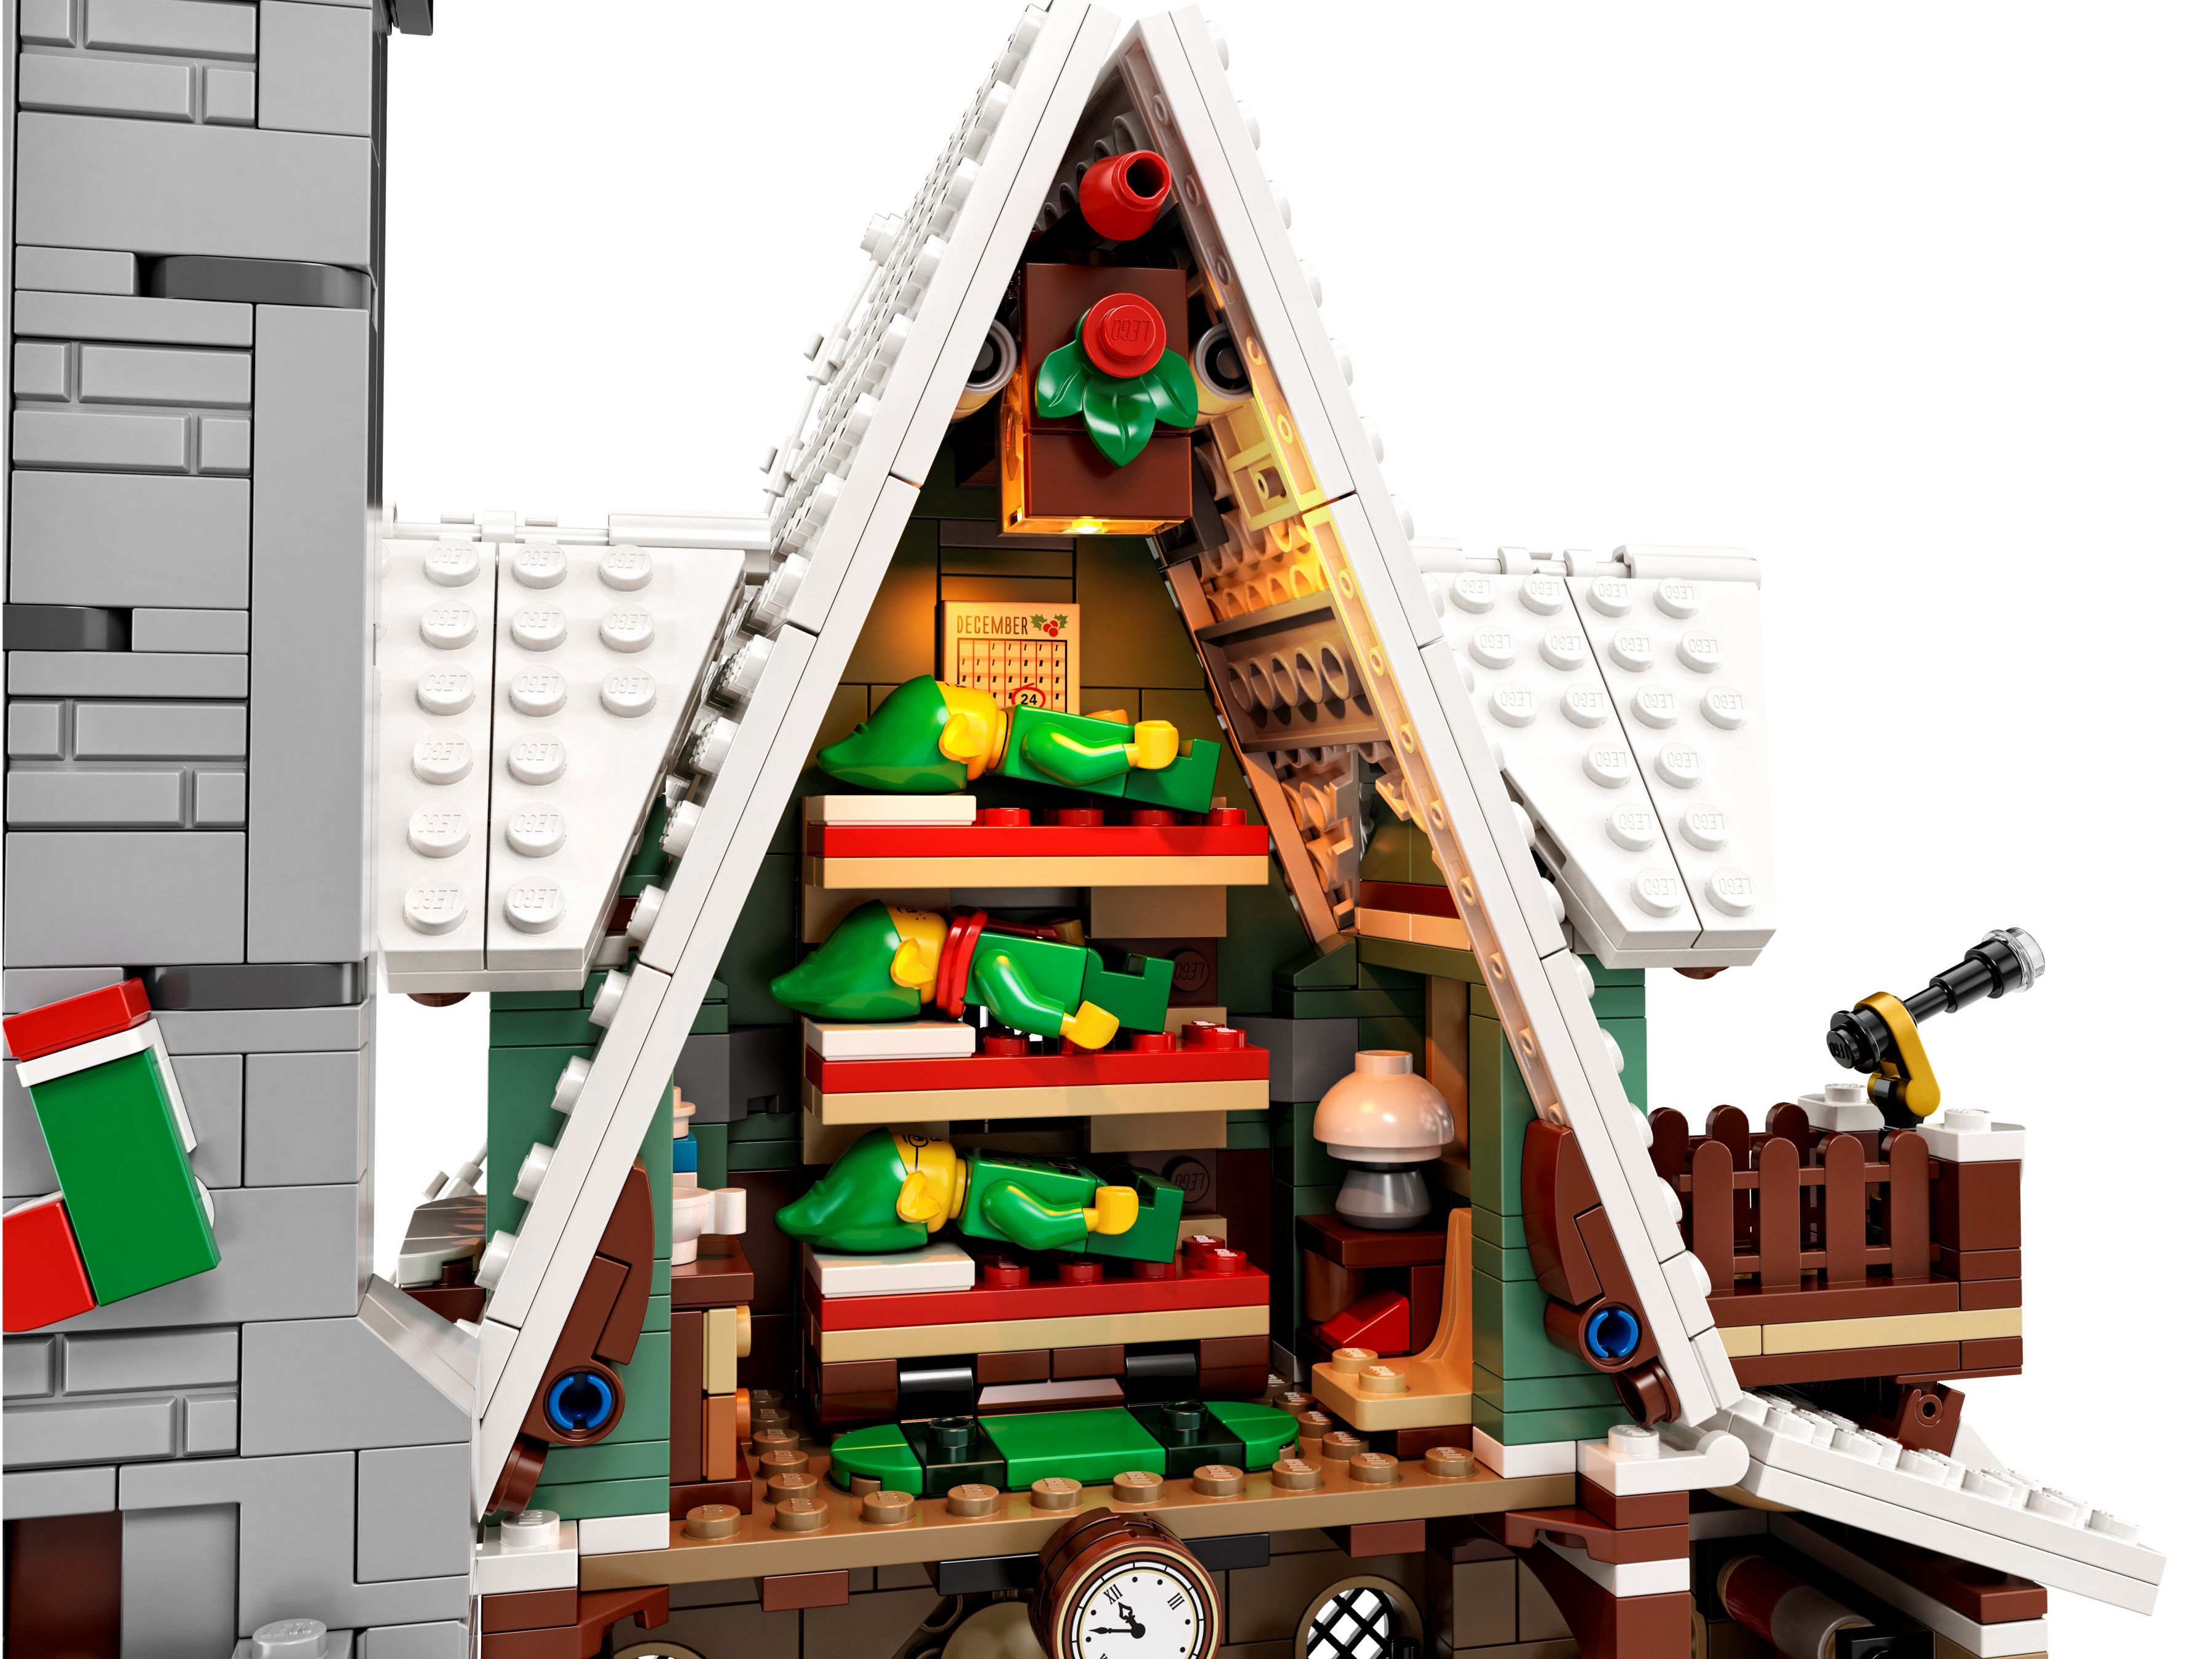 LEGO Advanced Models 10275 Winterliches Elfen Klubhaus LEGO_10275_alt4.jpg